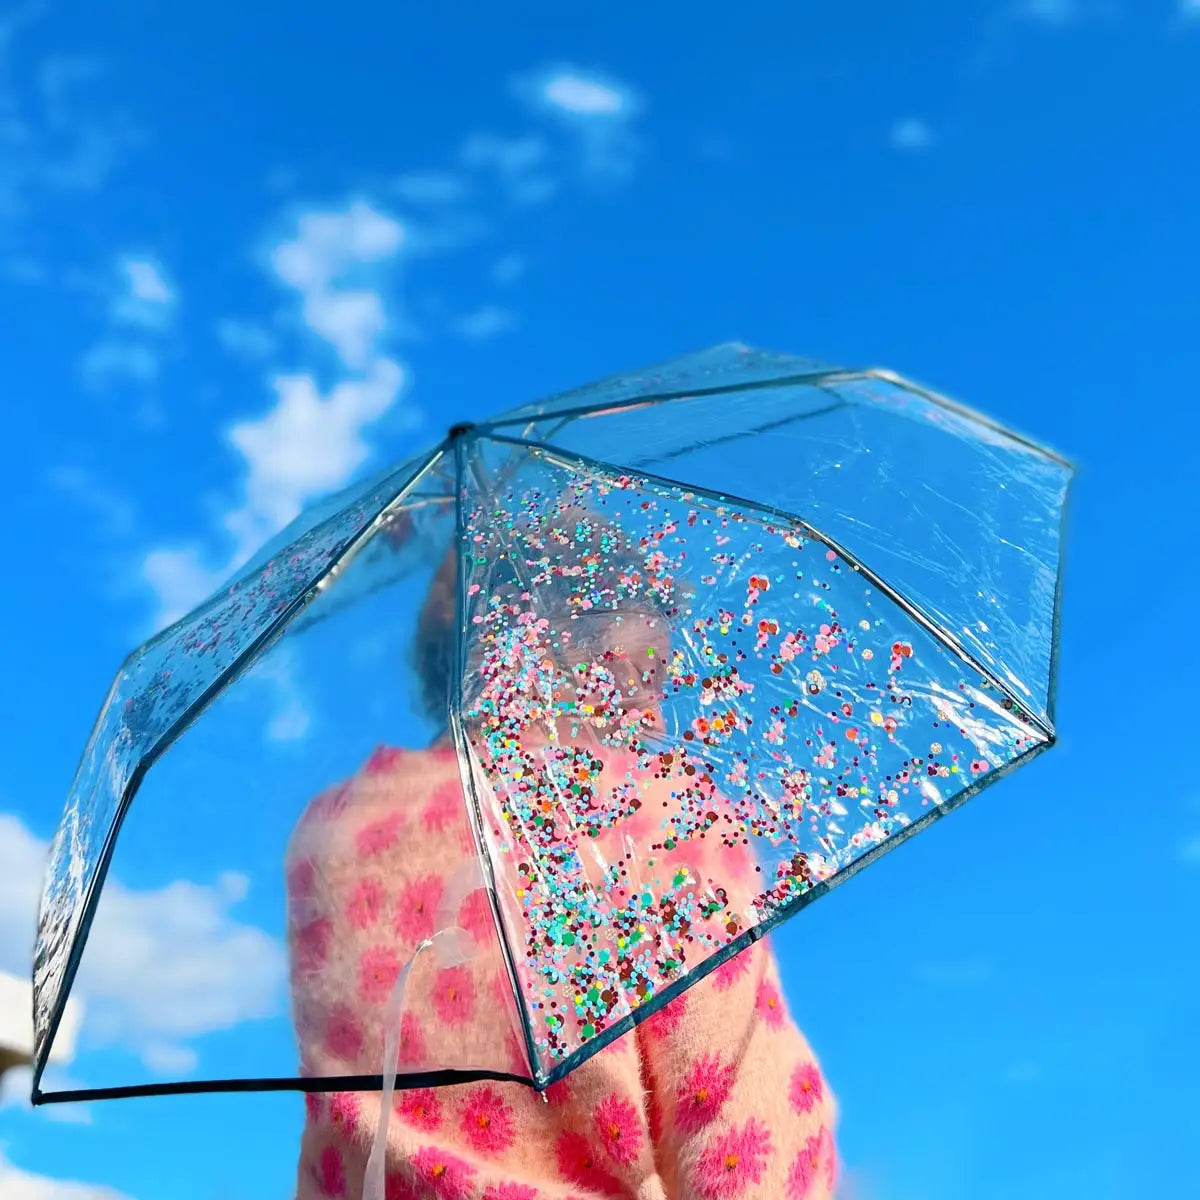 Packed Party - Raining Confetti Umbrella - Navy